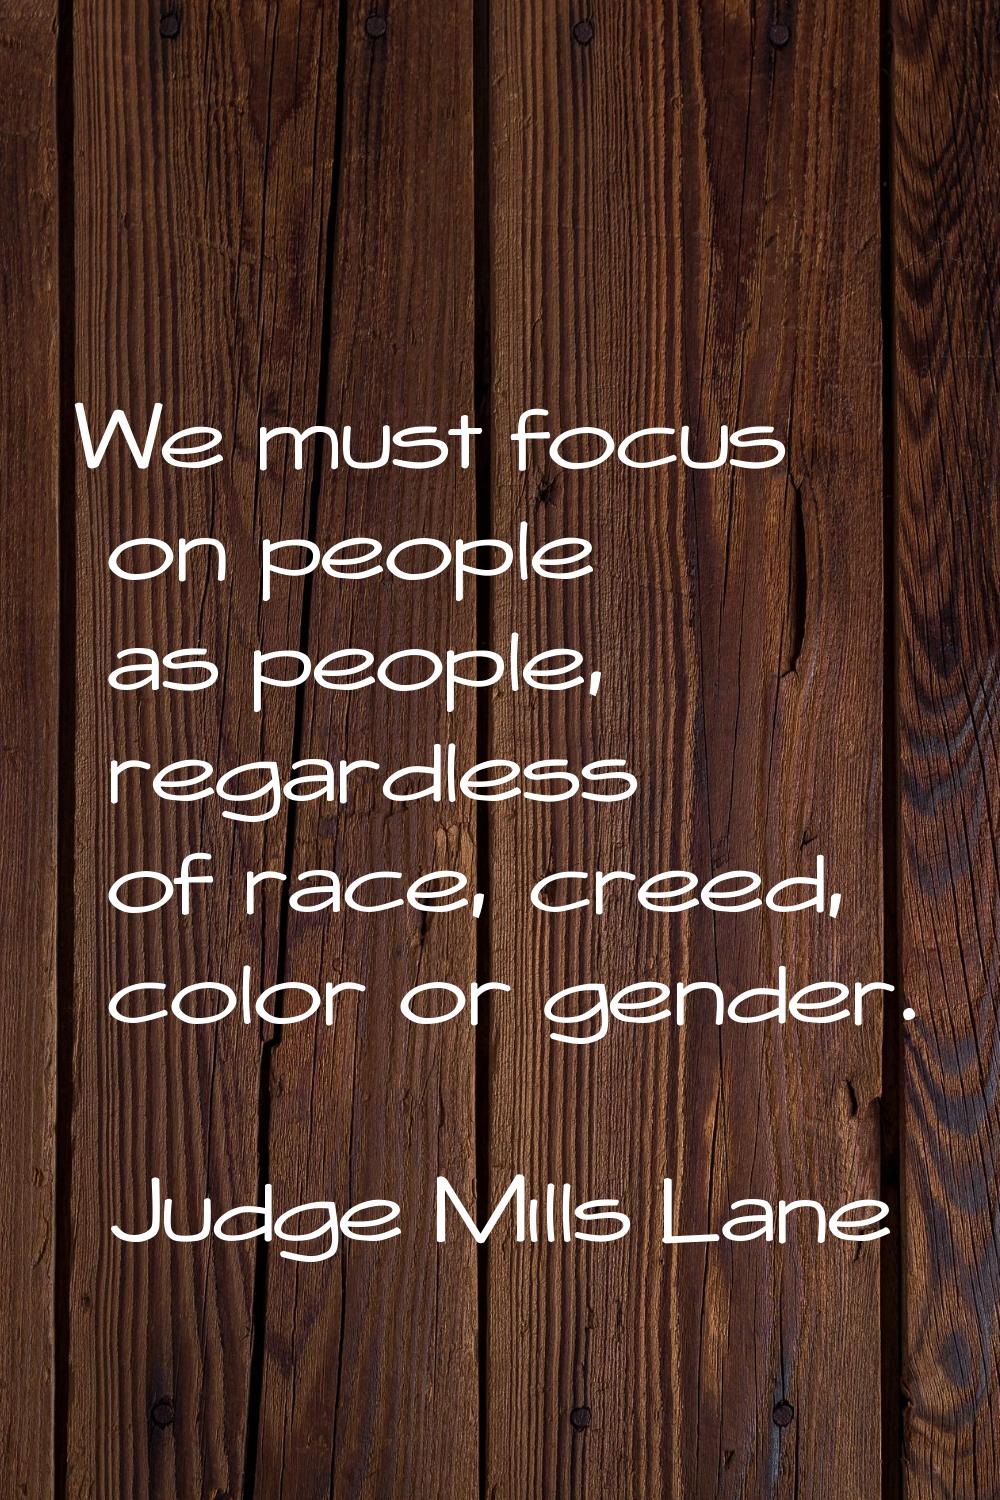 We must focus on people as people, regardless of race, creed, color or gender.